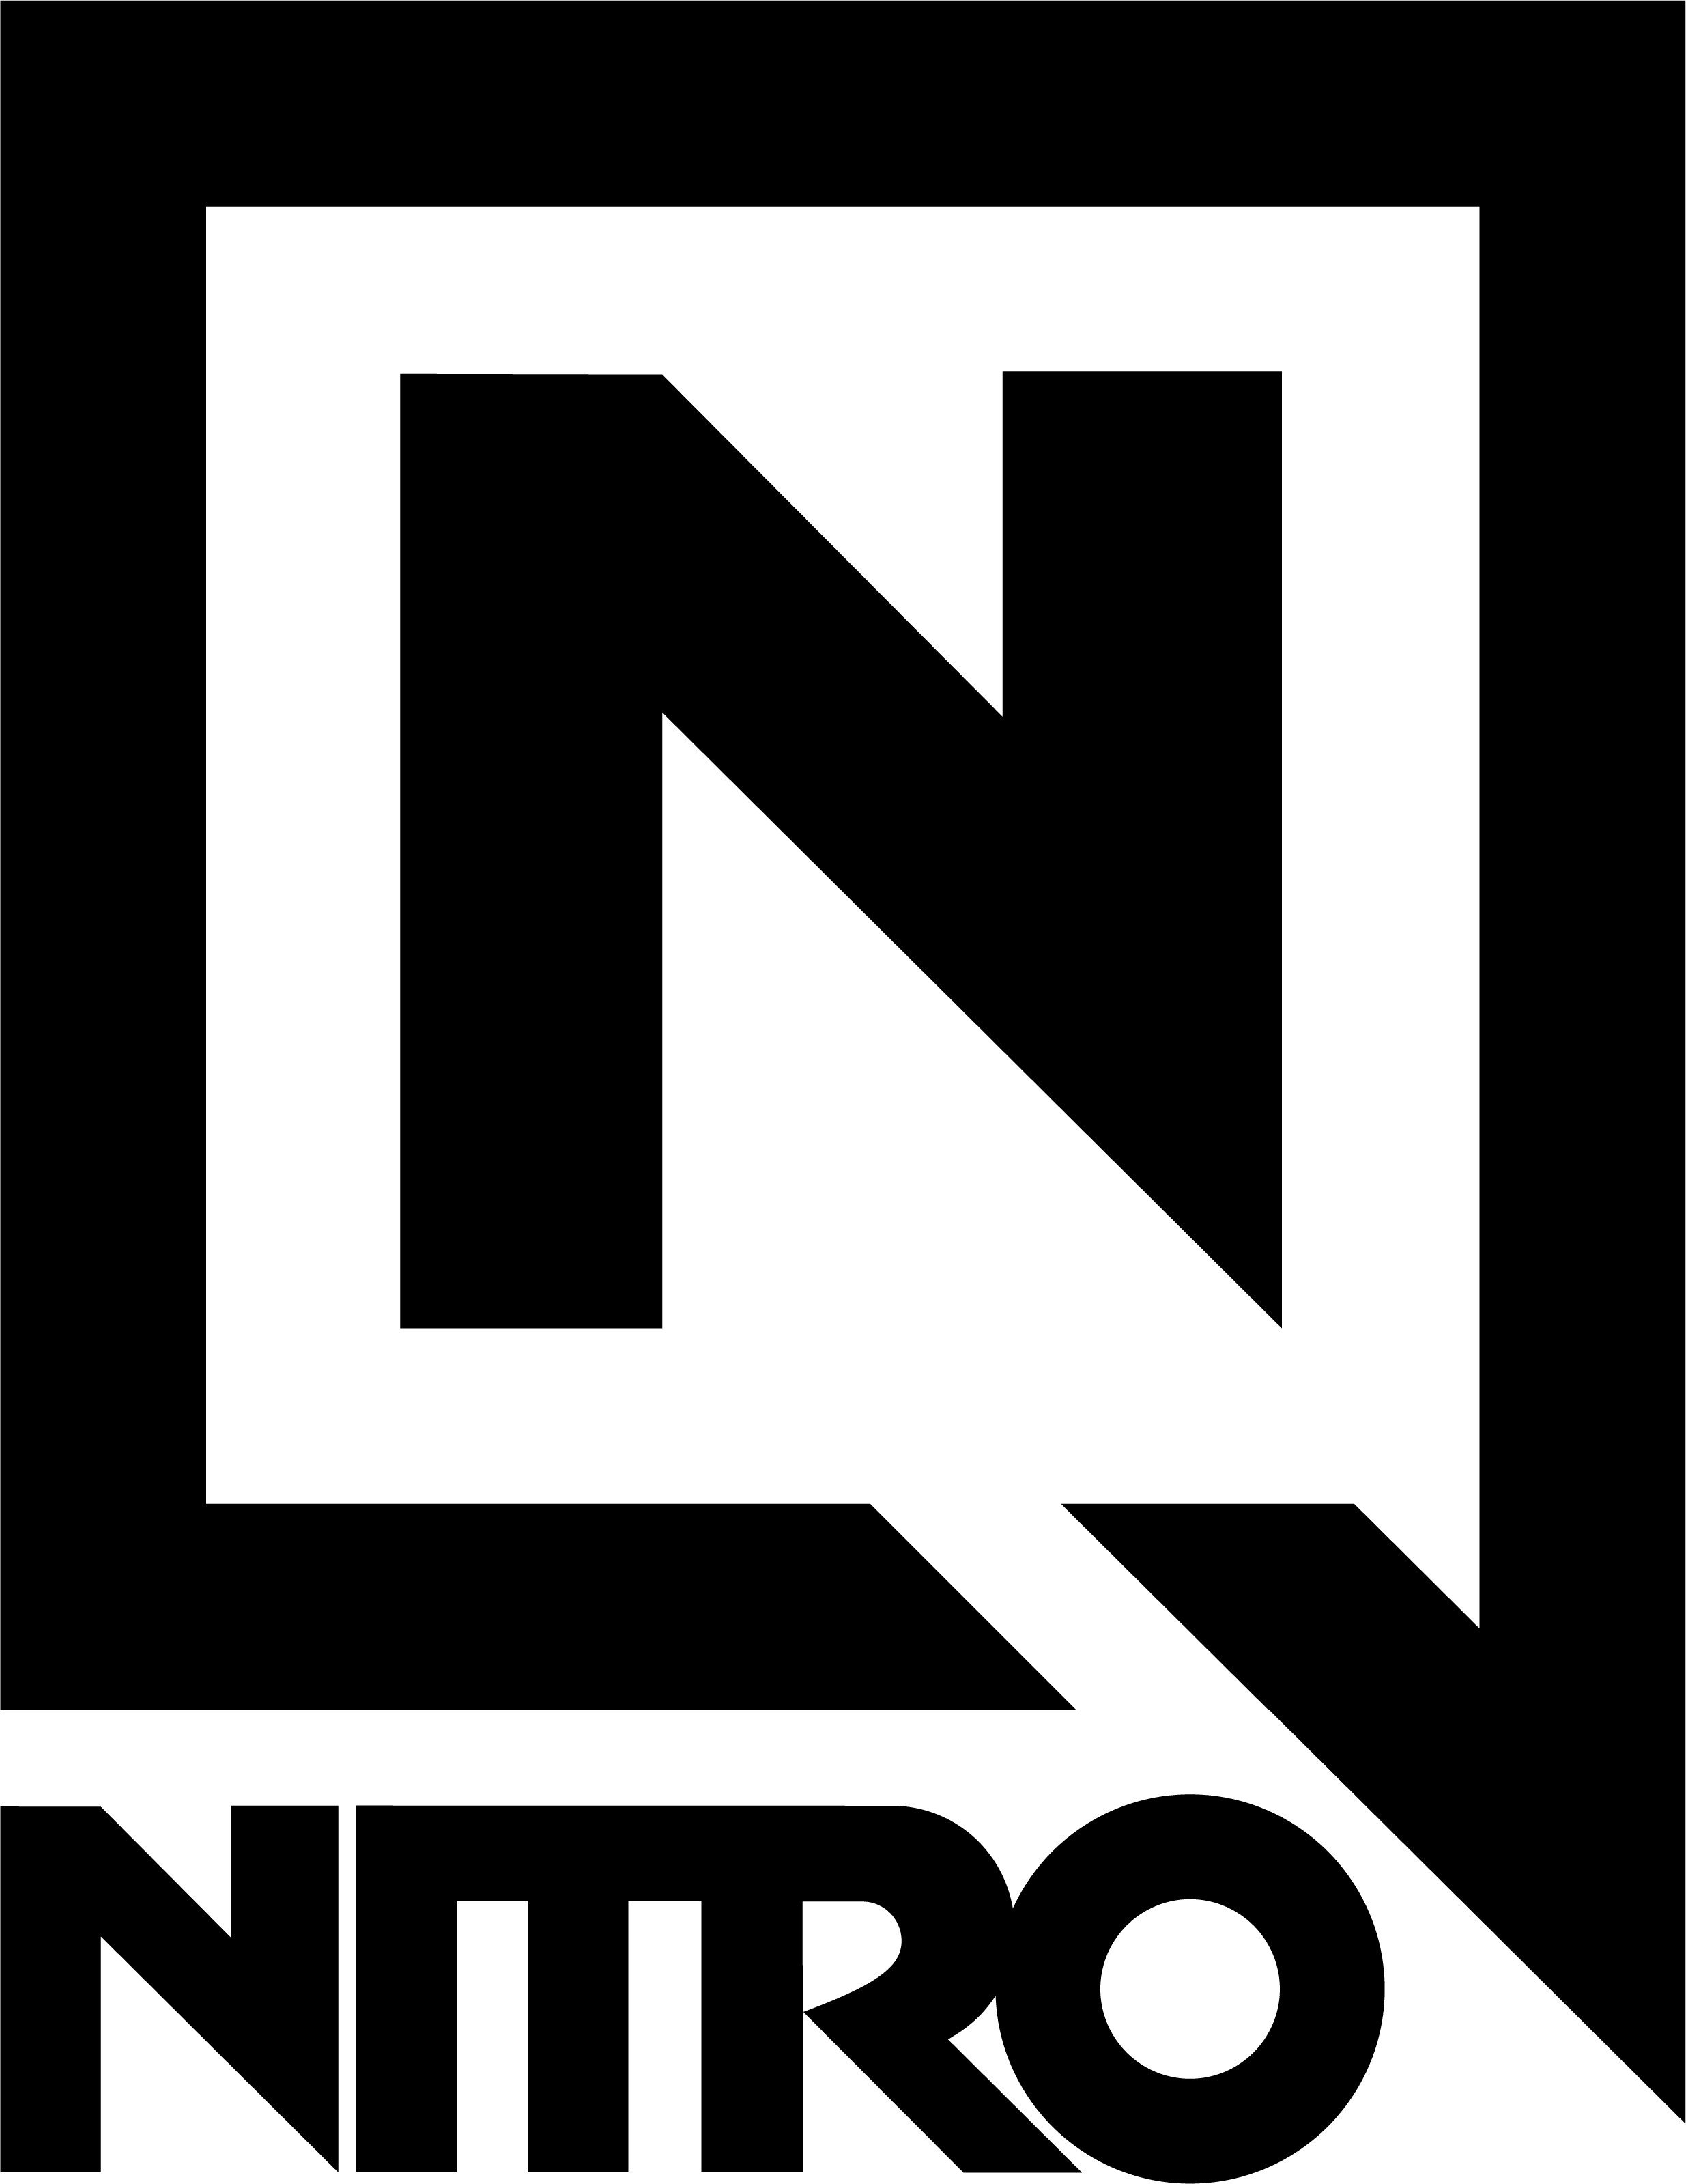 nitro-logo